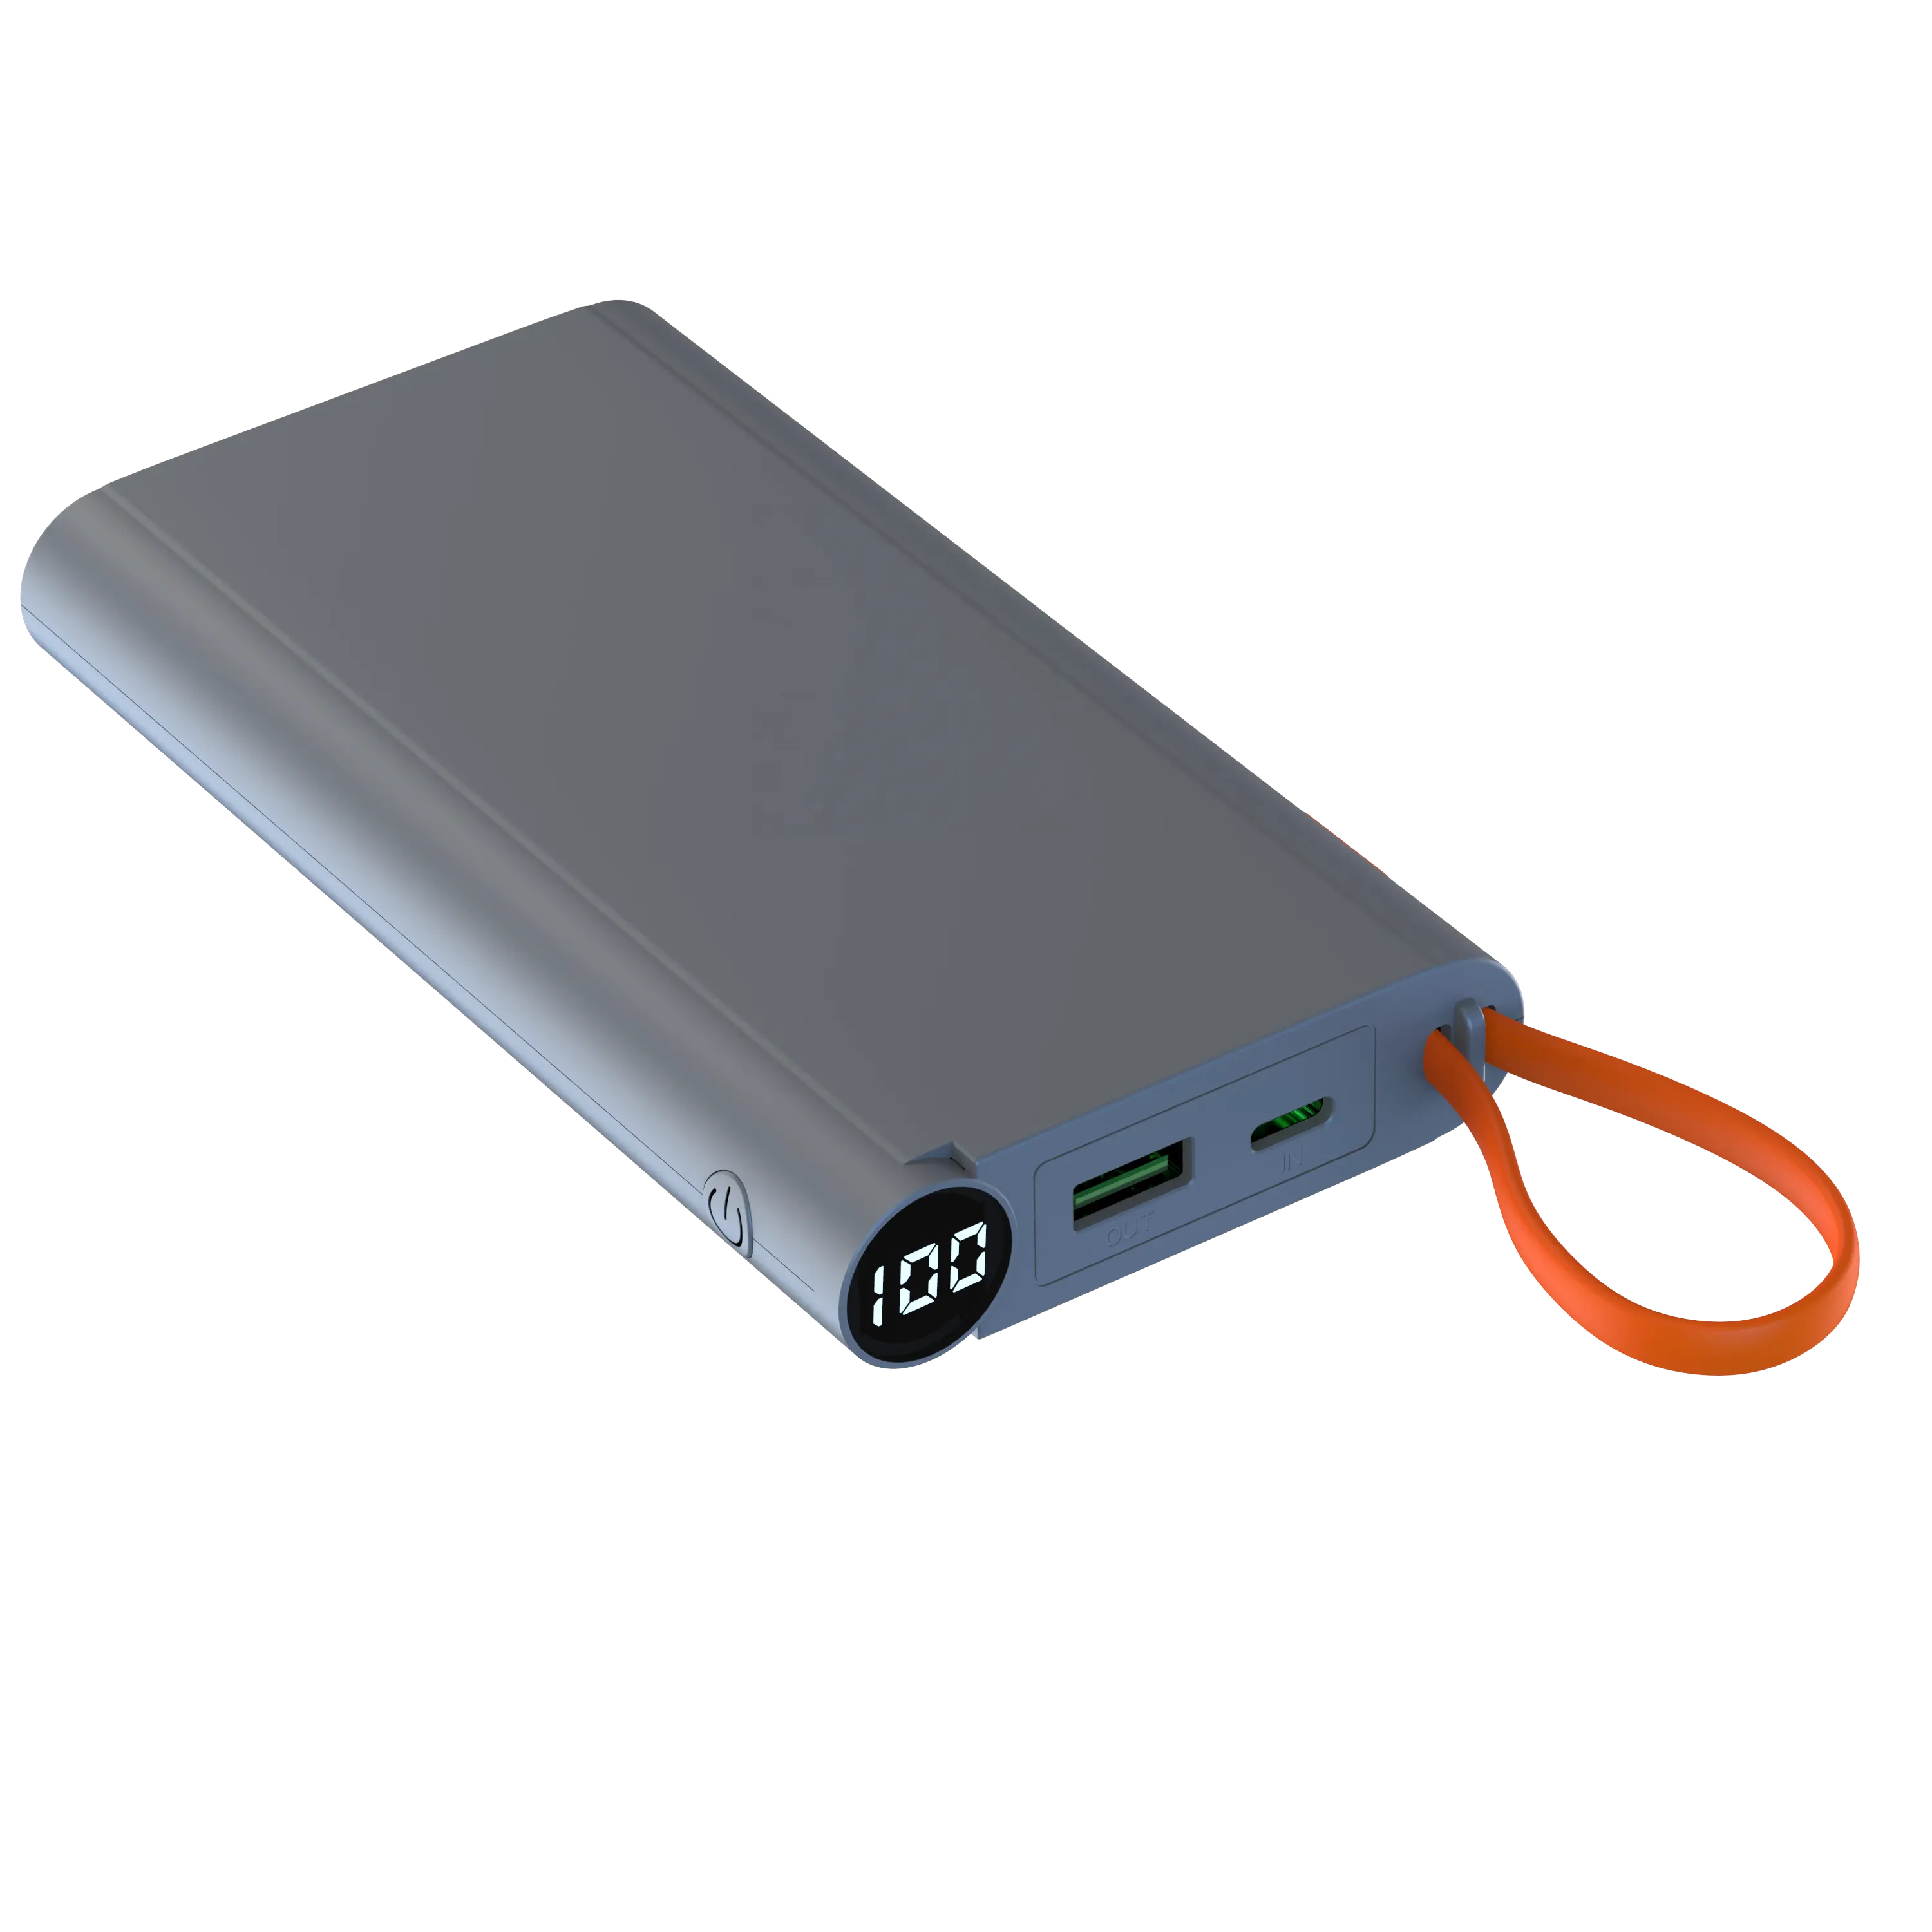 Power Bank caricabatteria portatile Power Bank da 22.5W con cavo integrato di tipo C e Display digitale